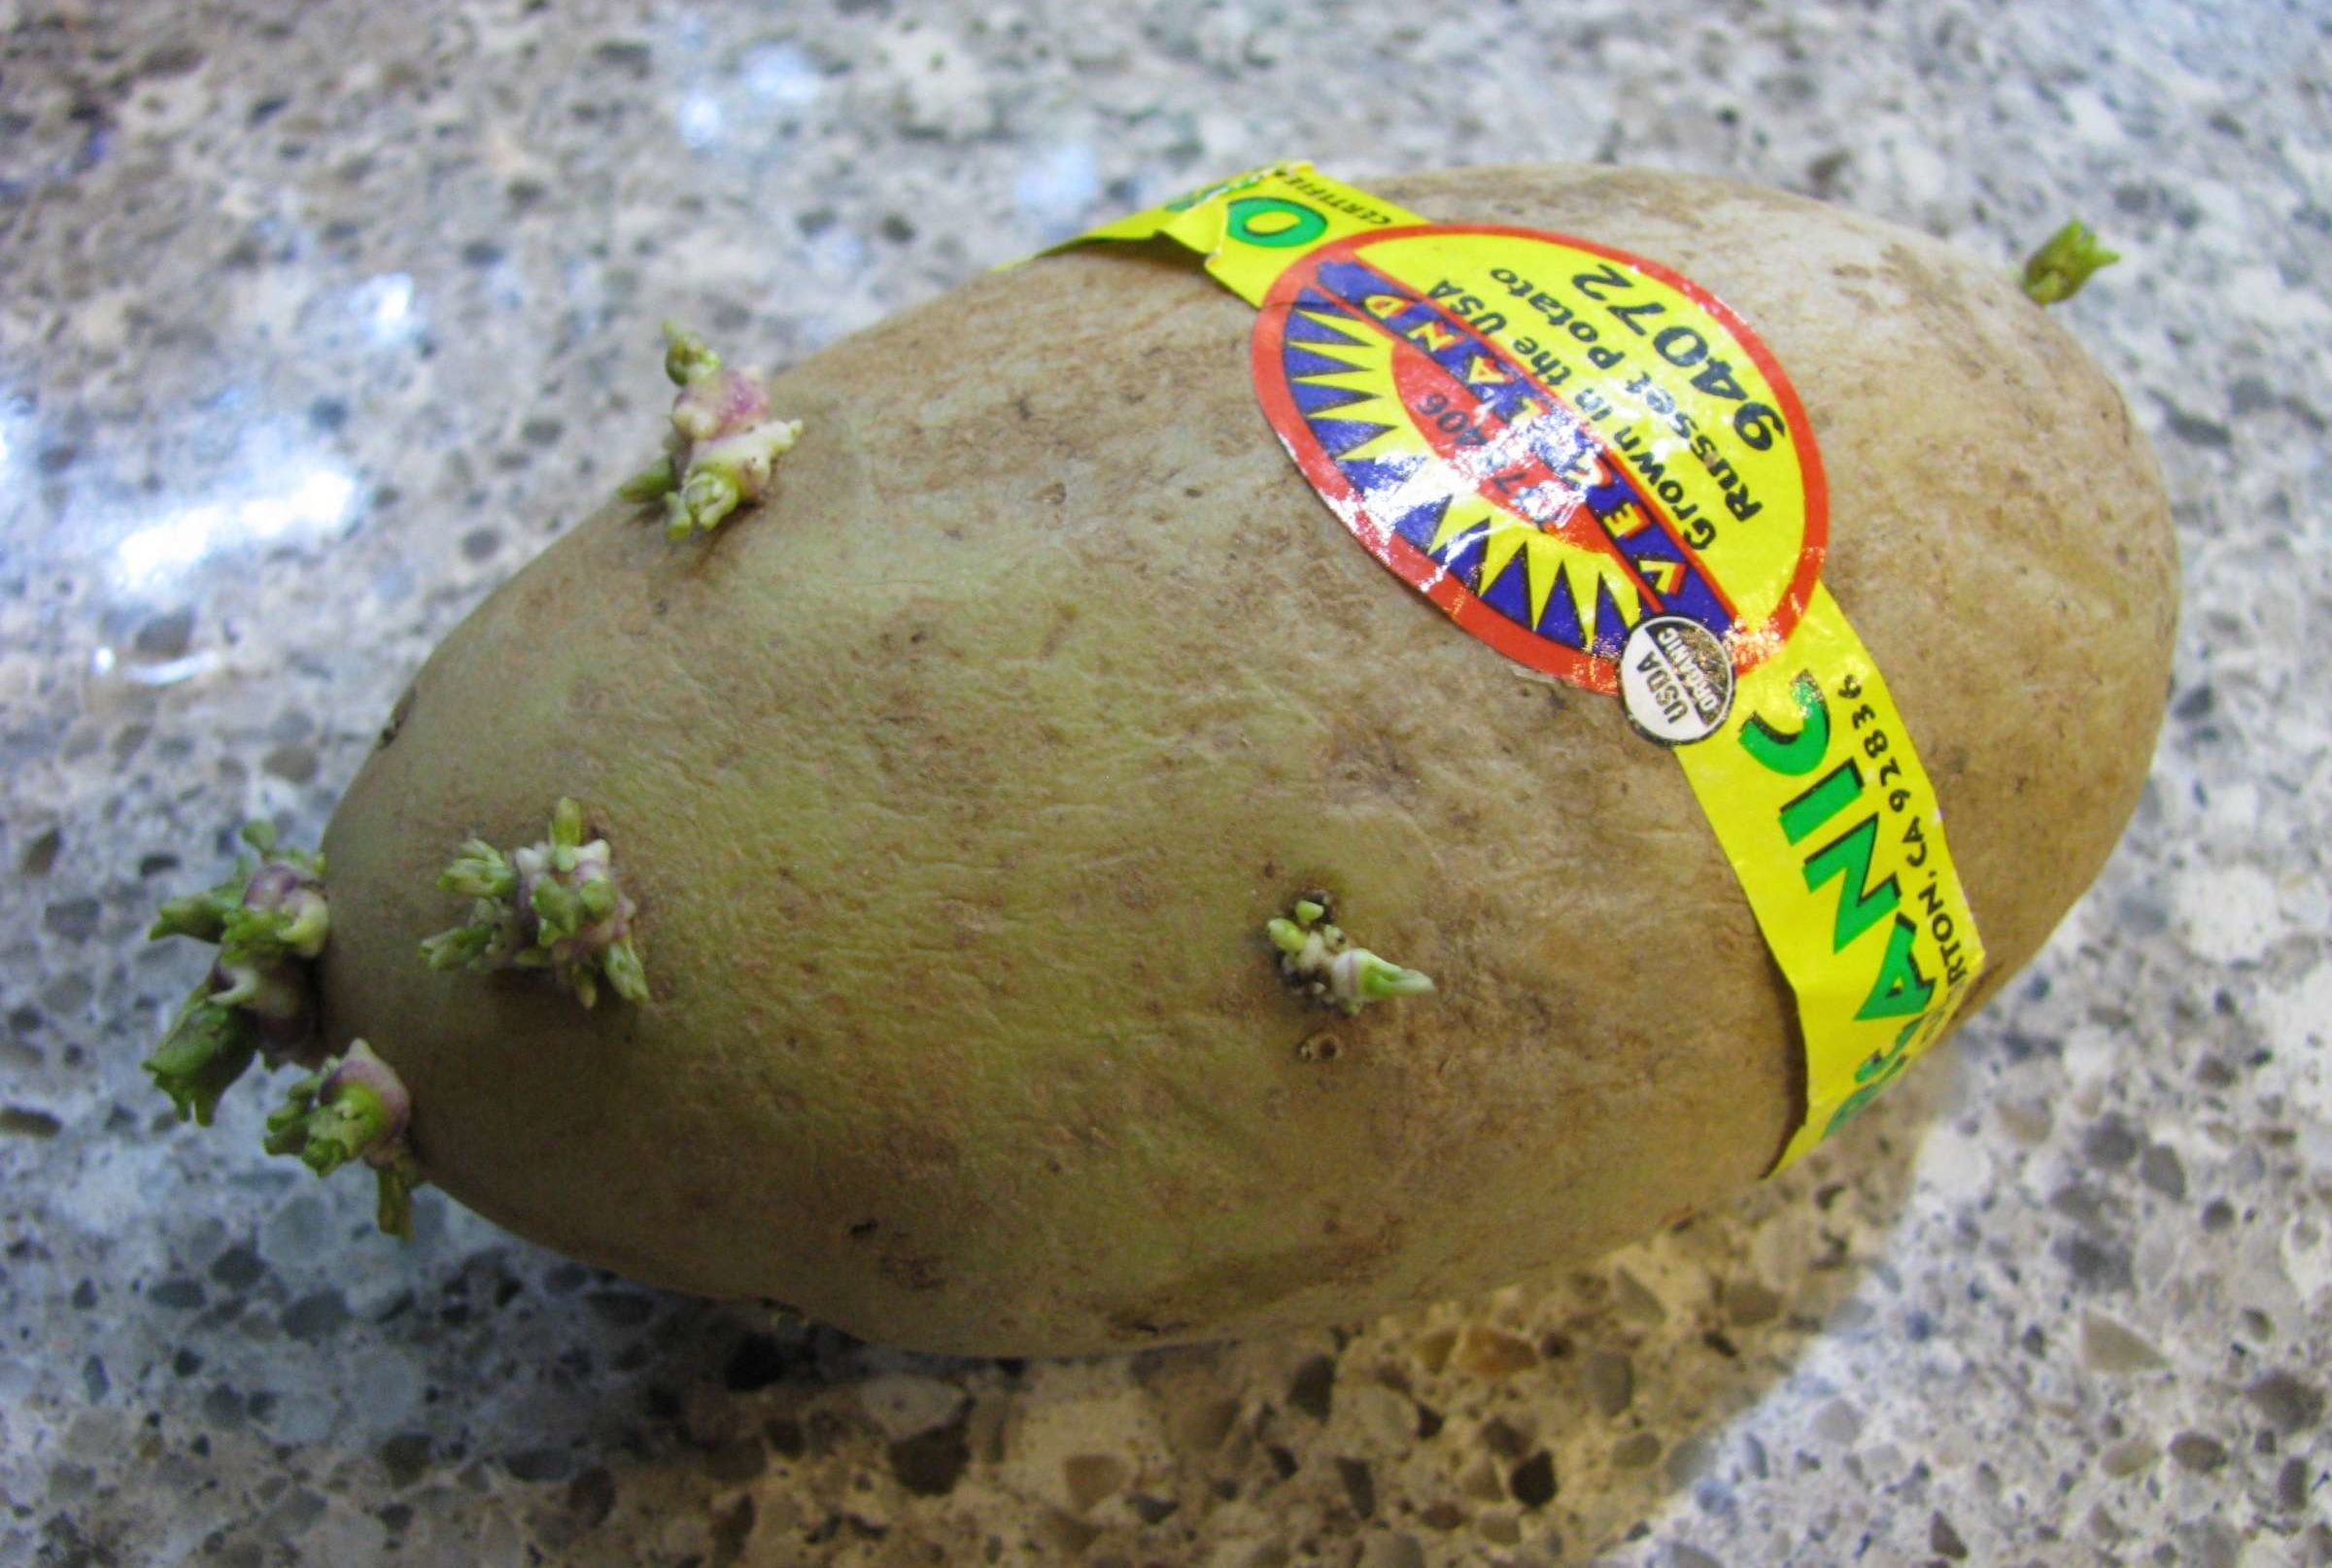 Poisonous potato update. Картофельный яд. Poison Potato. Harmless Potato. Картофель Ядовой или Яровой.